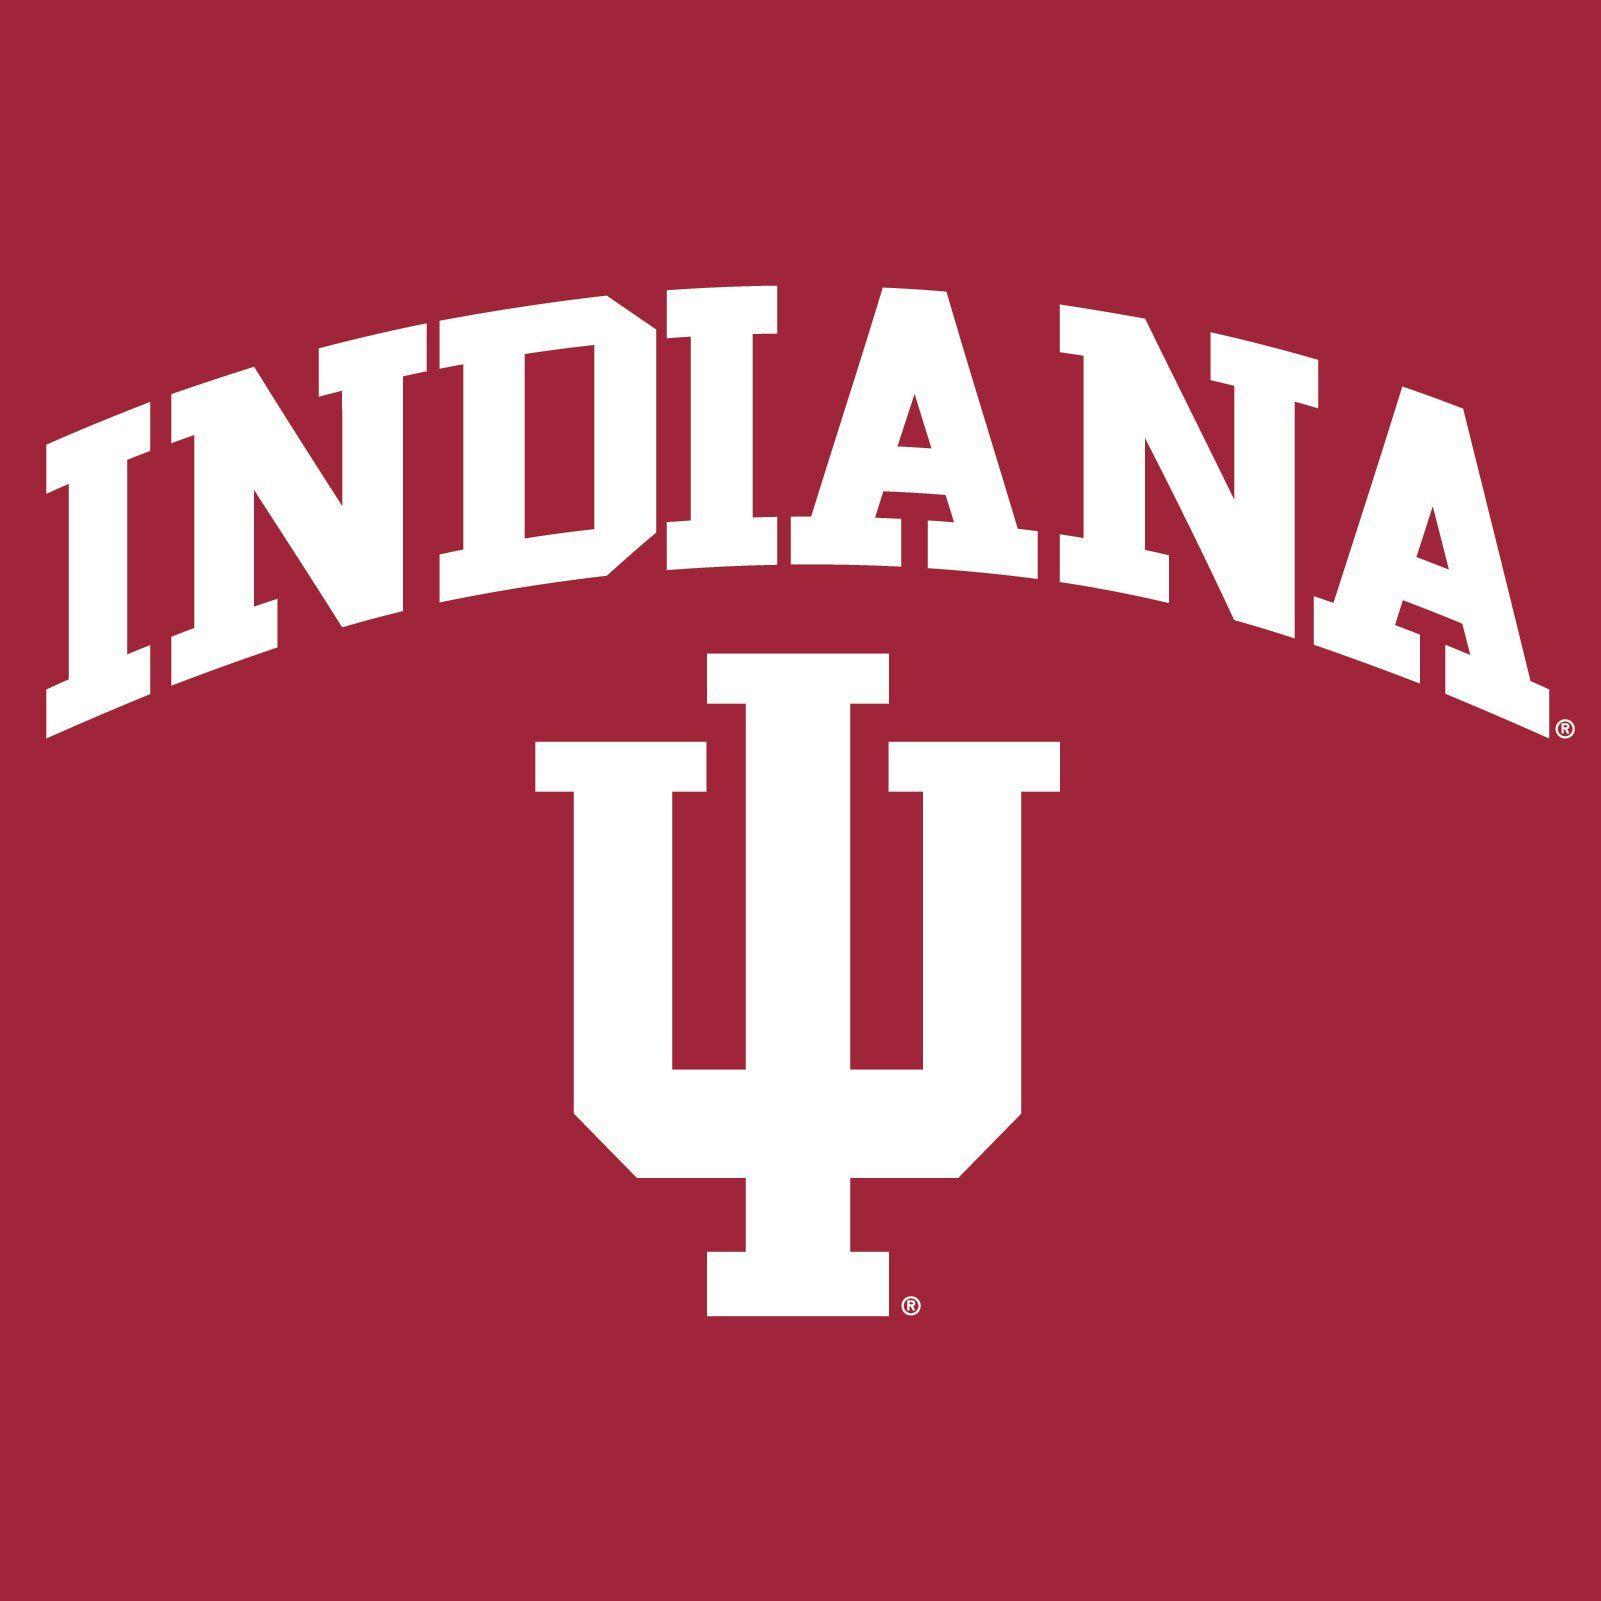 Indiana Logo - Indiana Arch Logo Tank